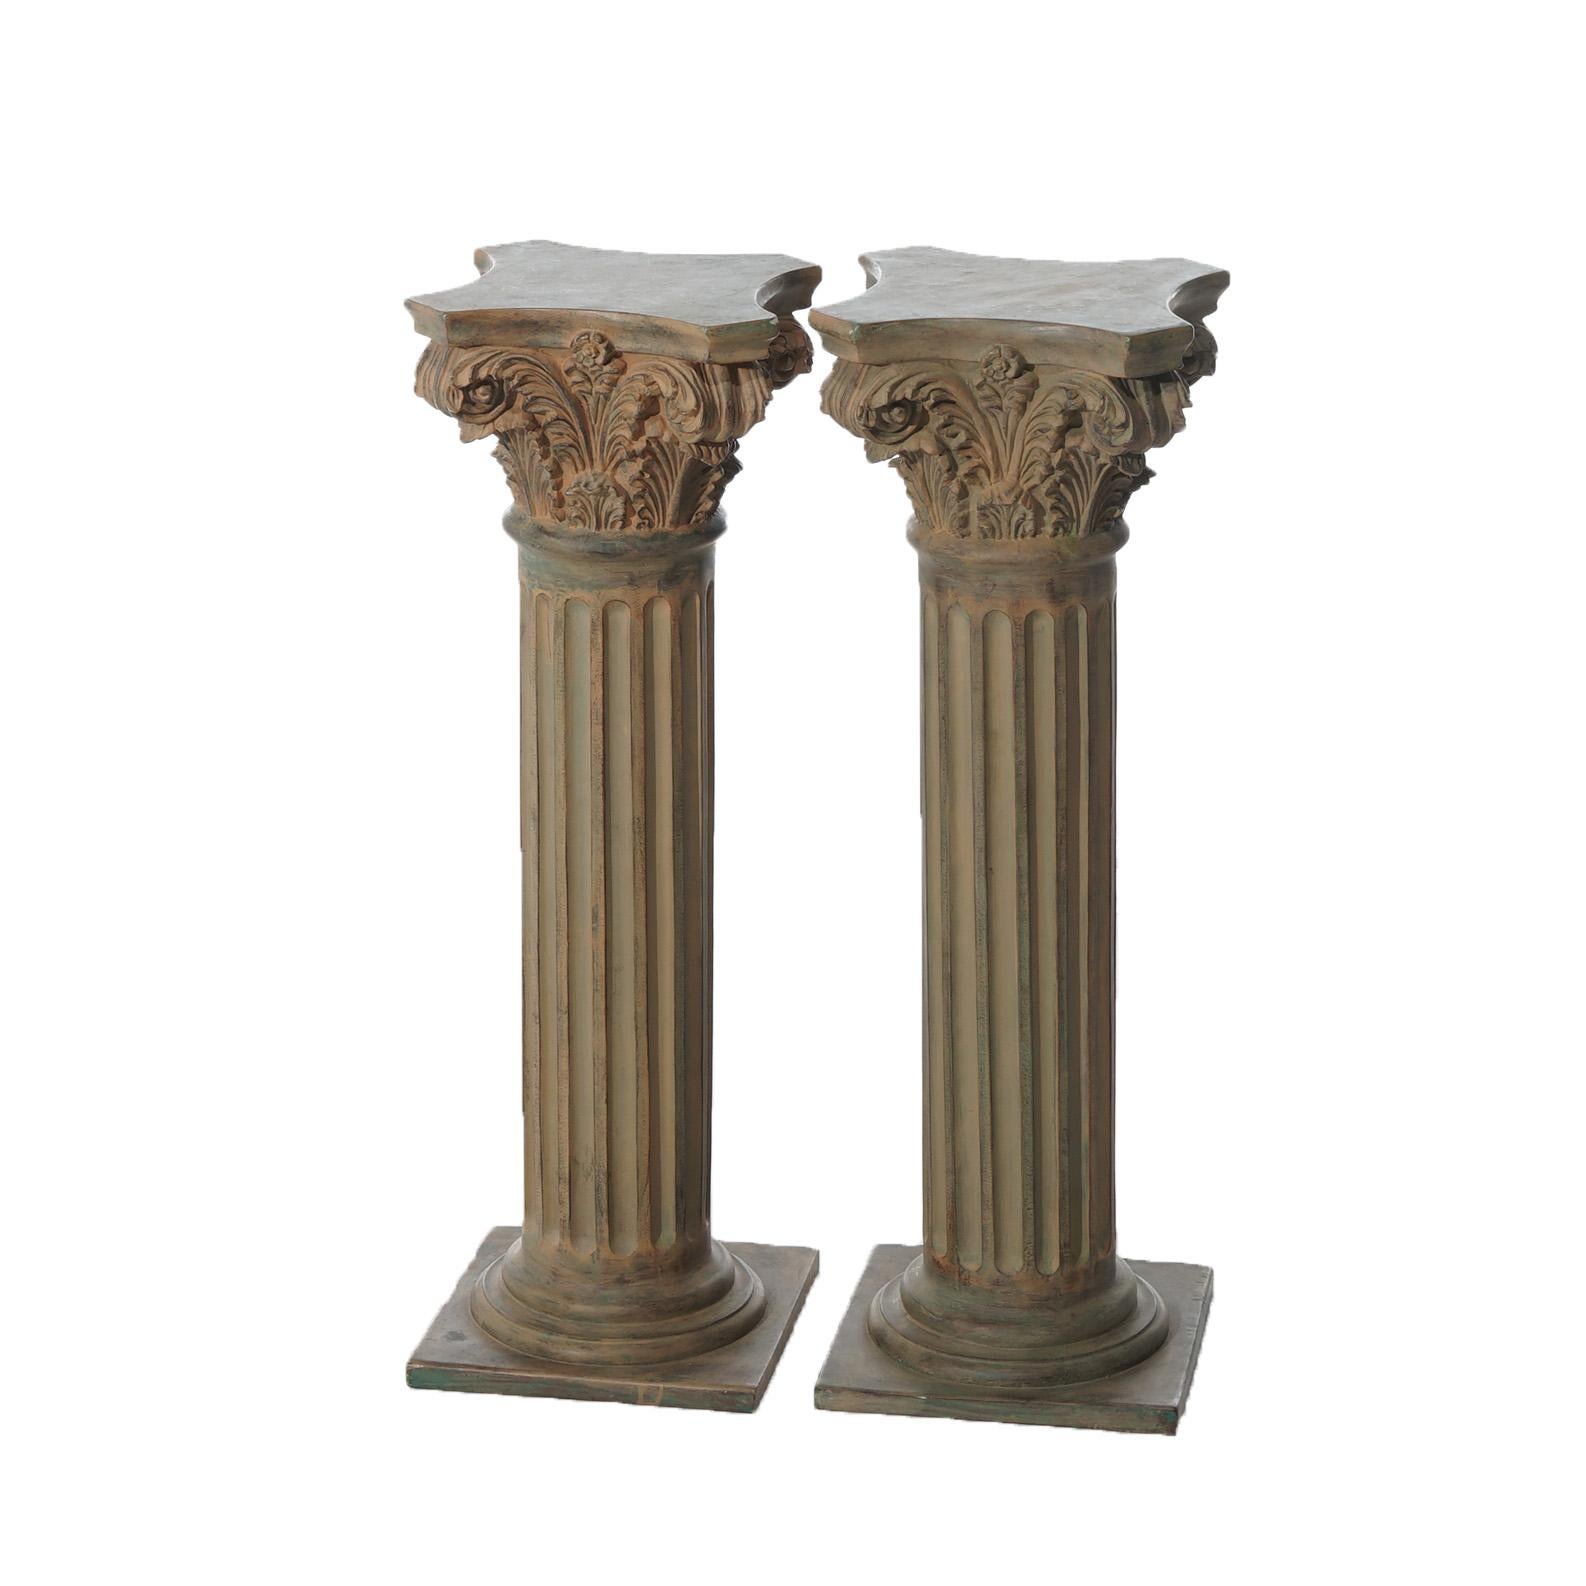 Molded Pair Neoclassical Corinthian Column Form Composite Sculpture Pedestals 20thC For Sale